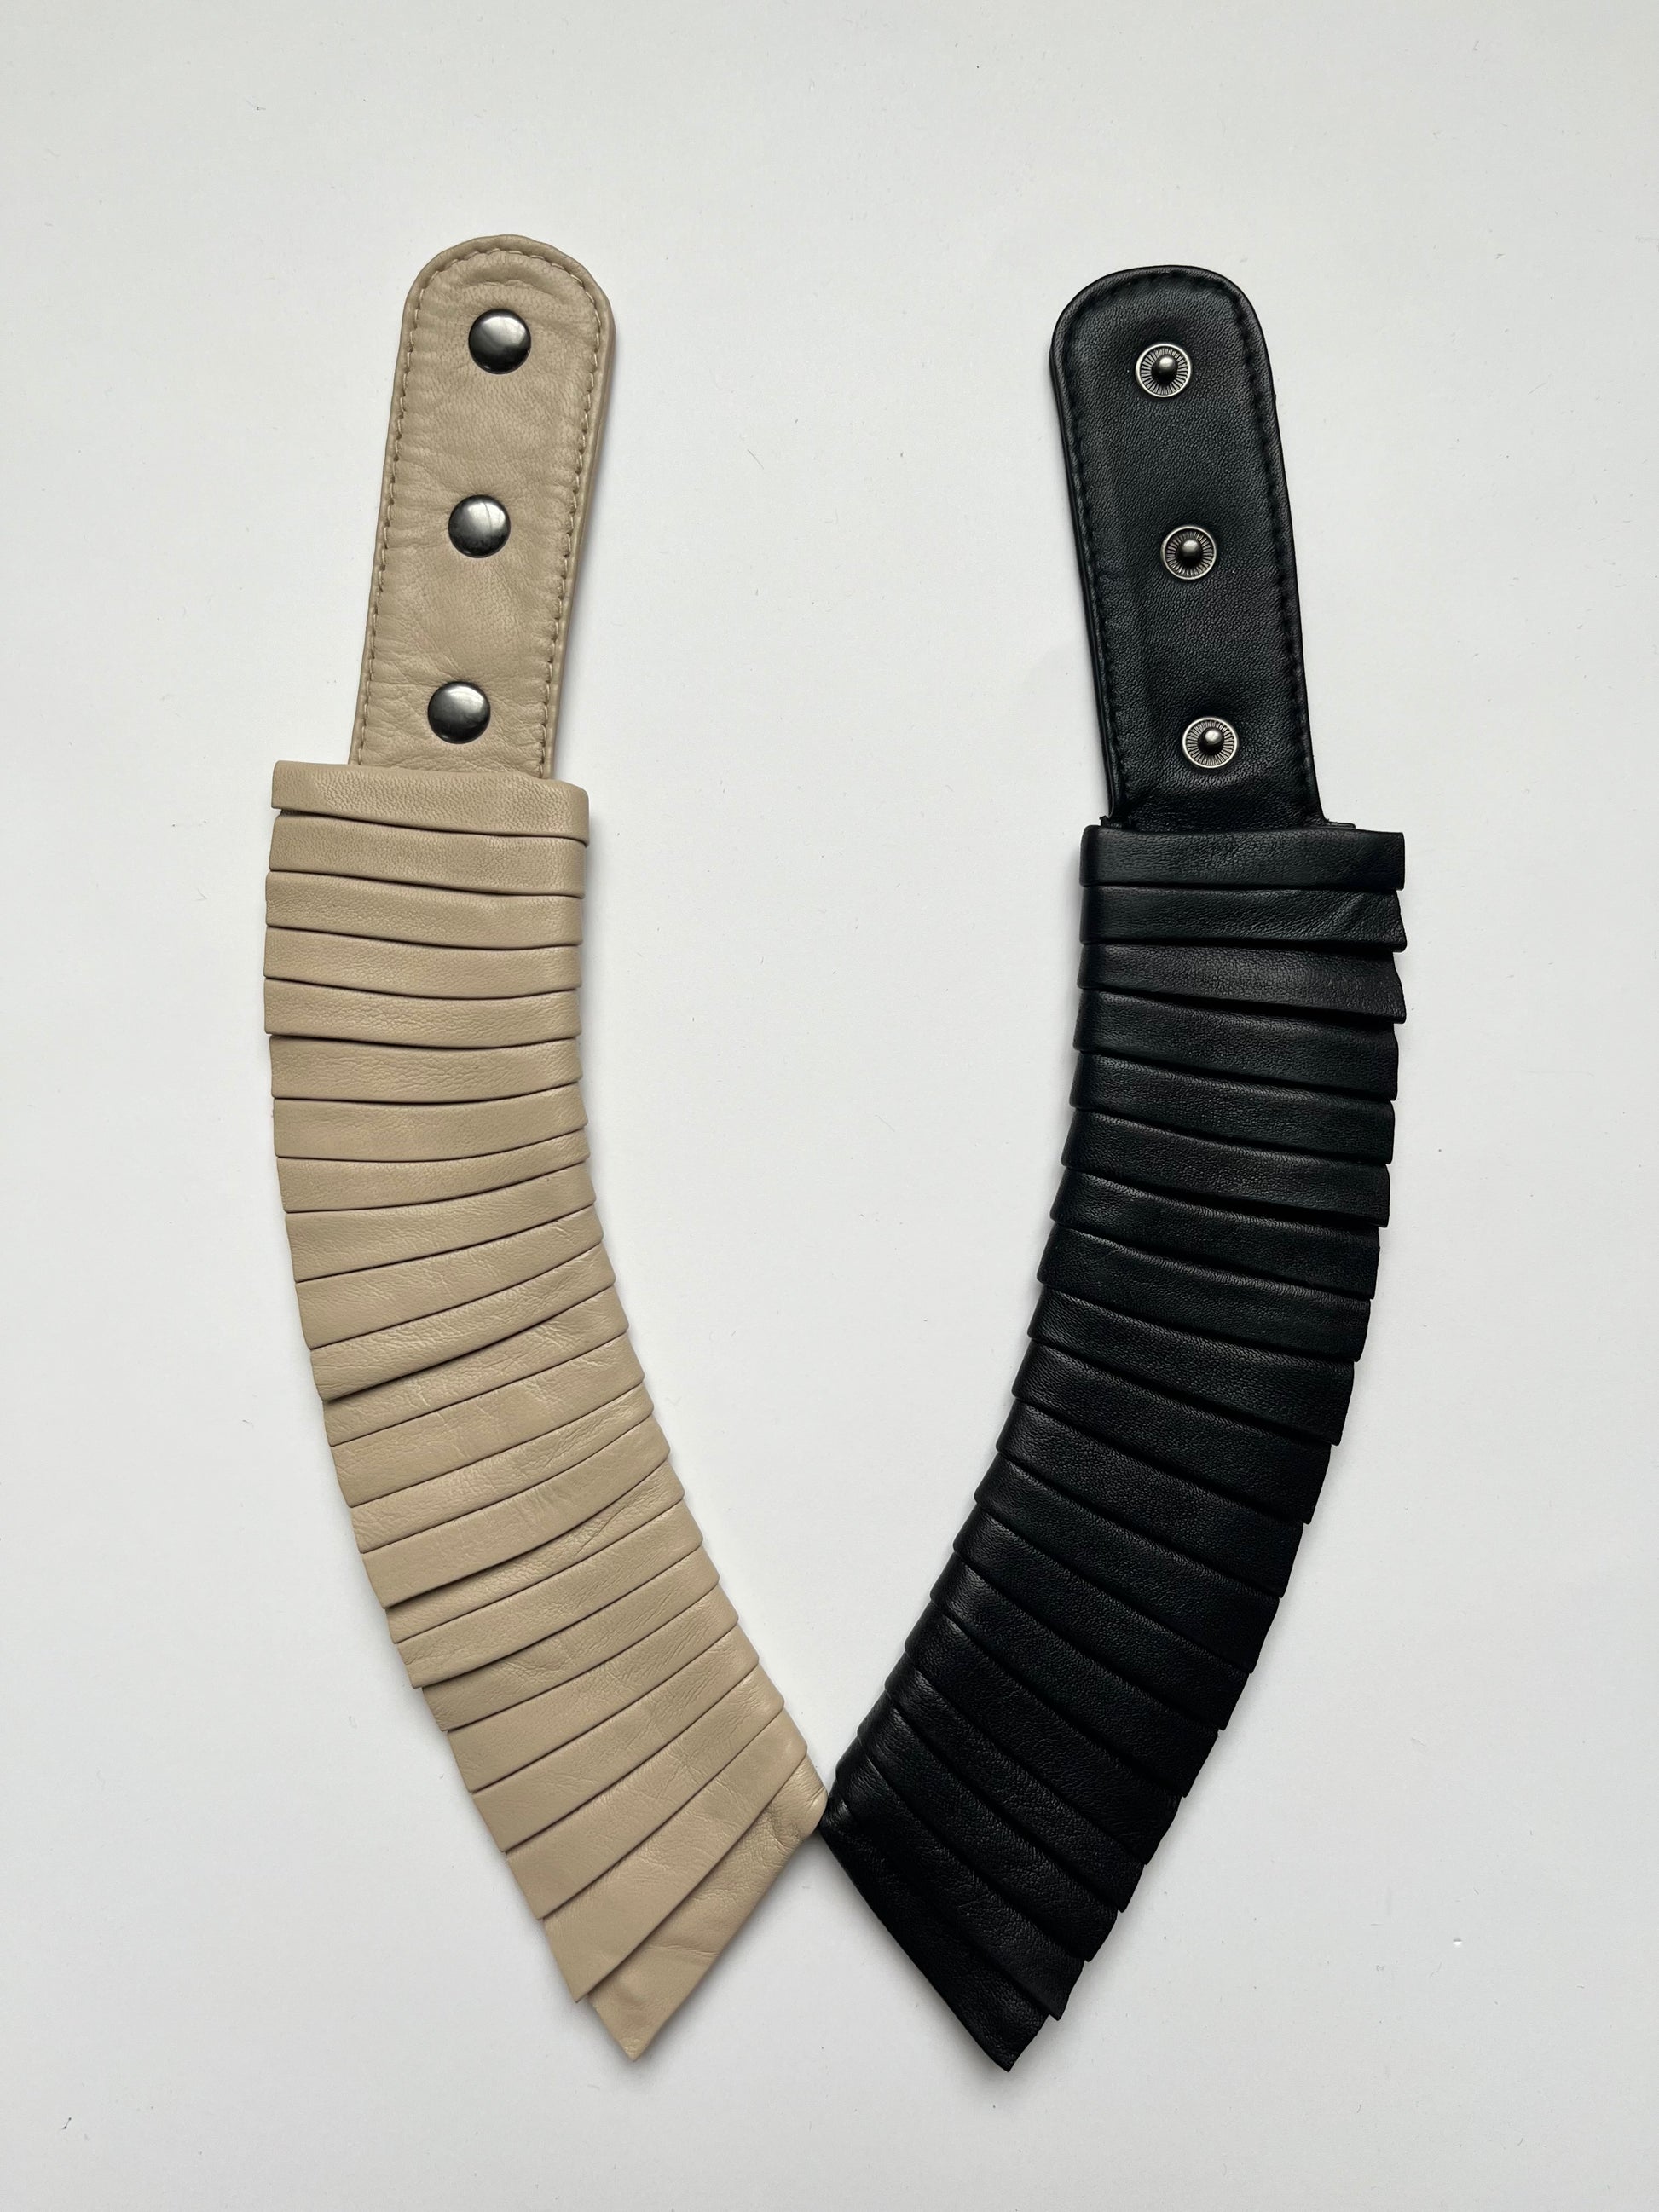 Piero leather collar duo sandbeige black denduon